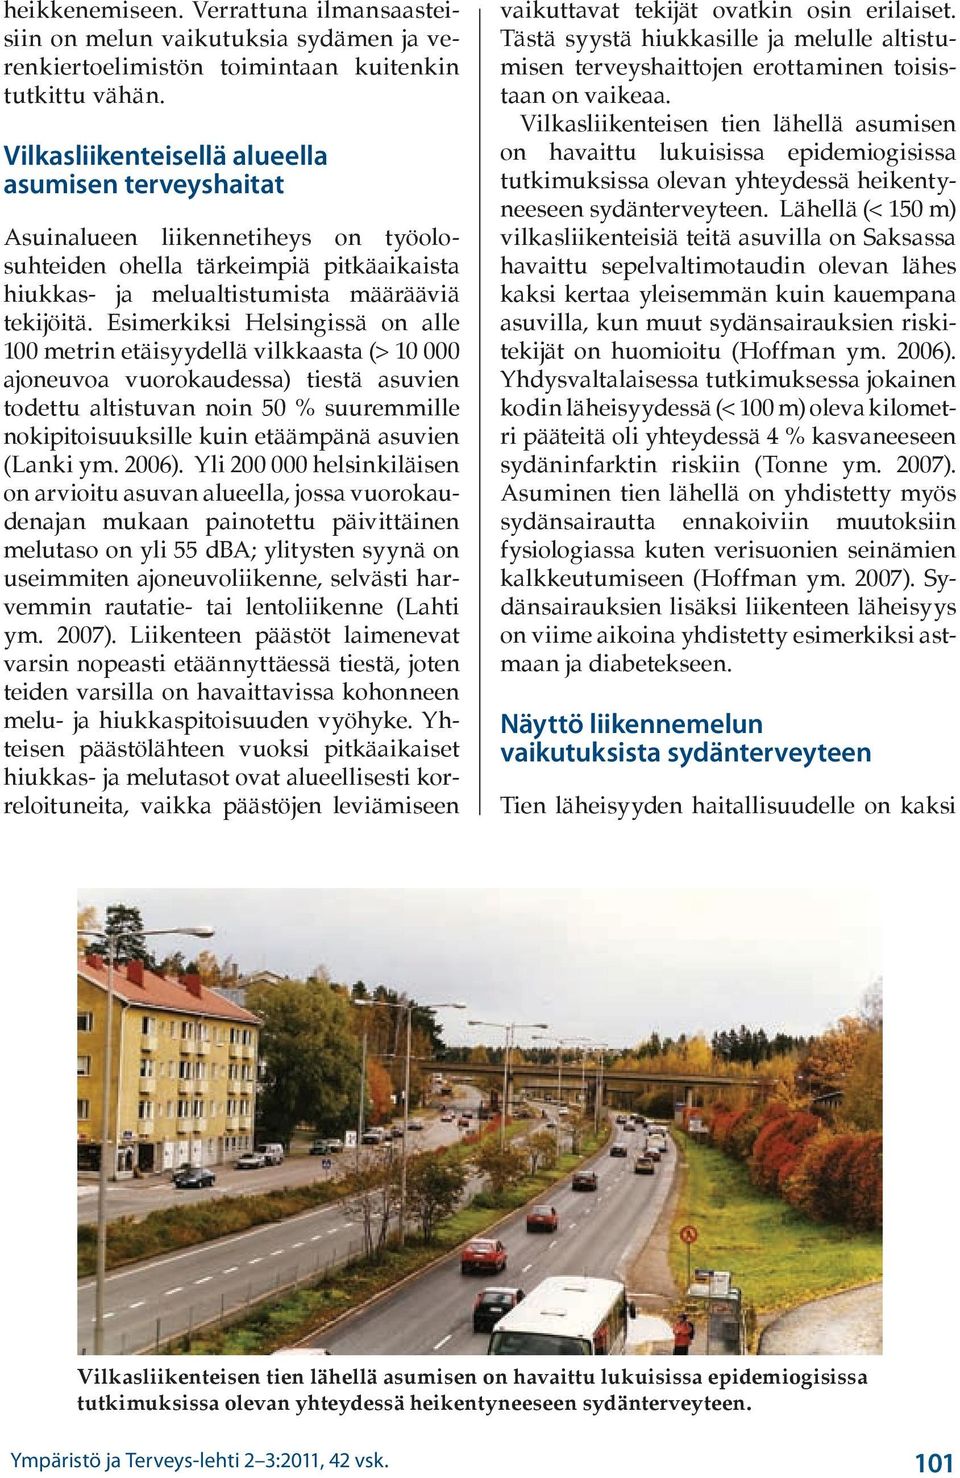 Esimerkiksi Helsingissä on alle 100 metrin etäisyydellä vilkkaasta (> 10 000 ajoneuvoa vuorokaudessa) tiestä asuvien todettu altistuvan noin 50 % suuremmille nokipitoisuuksille kuin etäämpänä asuvien